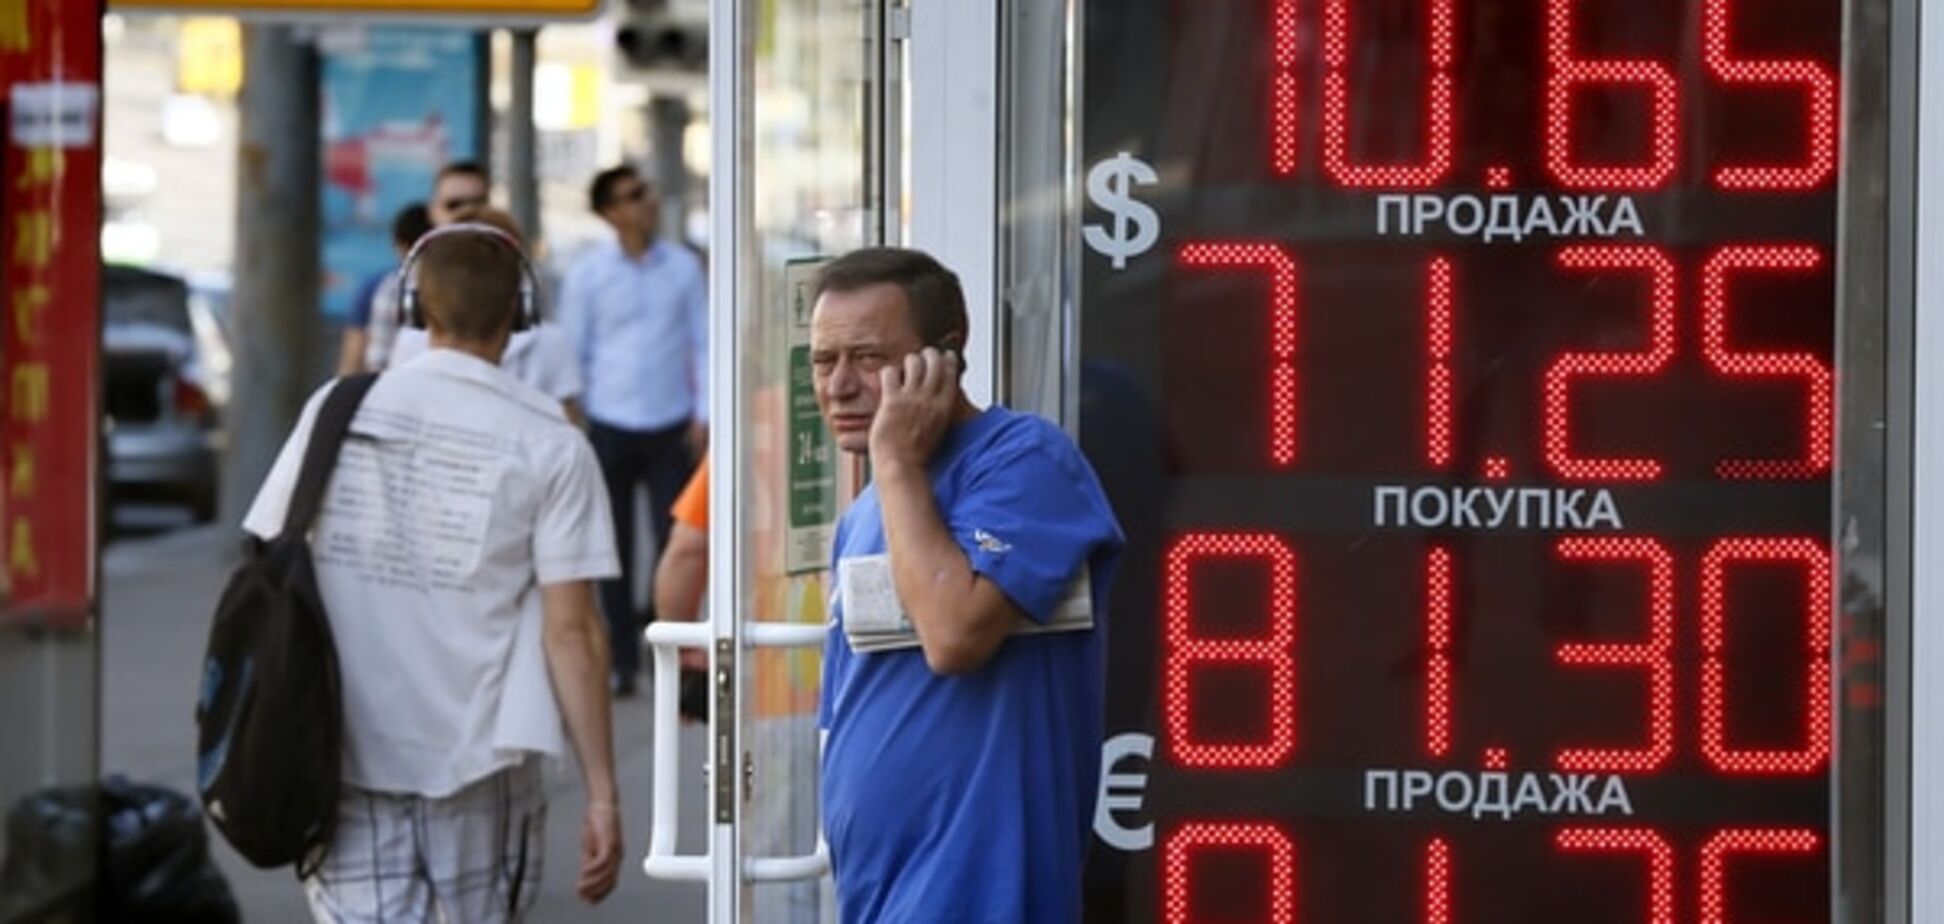 Россиян стали больше интересовать курс рубля и безработица, а не 'бандеровцы' - опрос